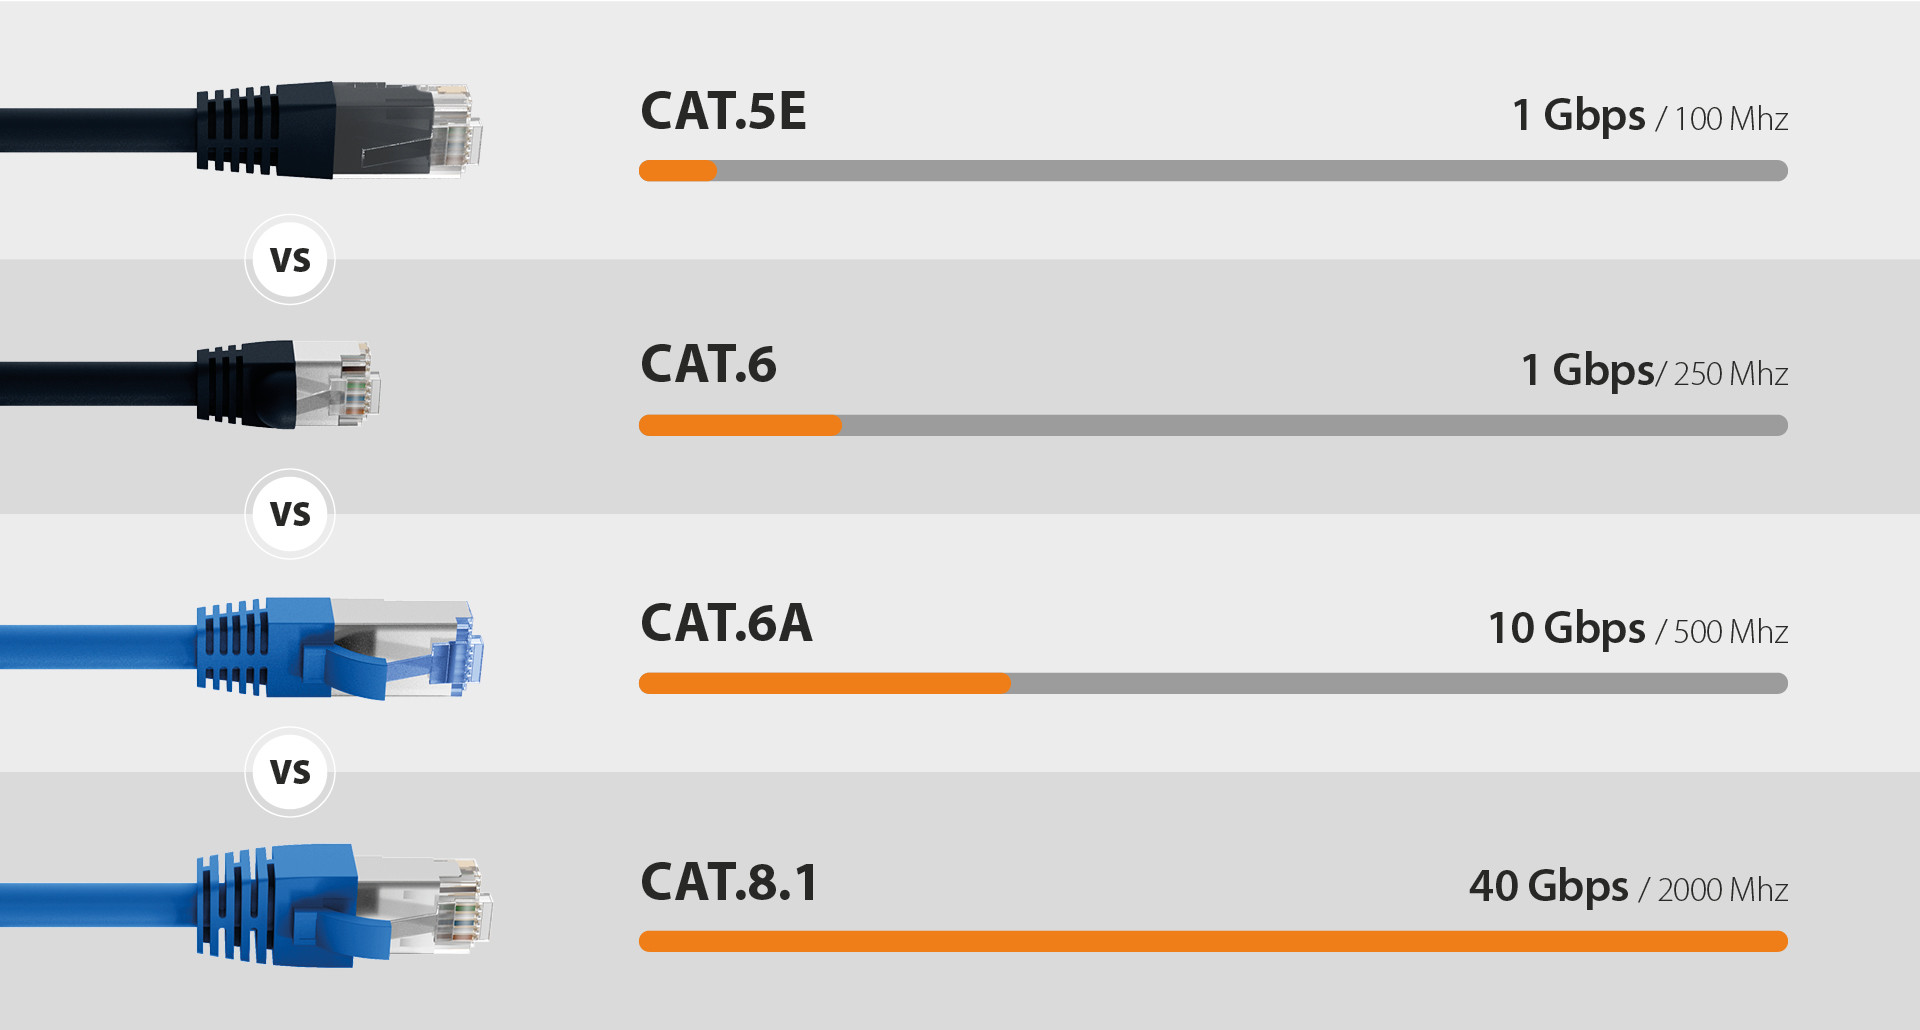 Sammenligning af netværkskabelkategorierne CAT.5E, CAT.6, CAT.6A og CAT.8.1 med deres transmissionshastigheder og -frekvenser.